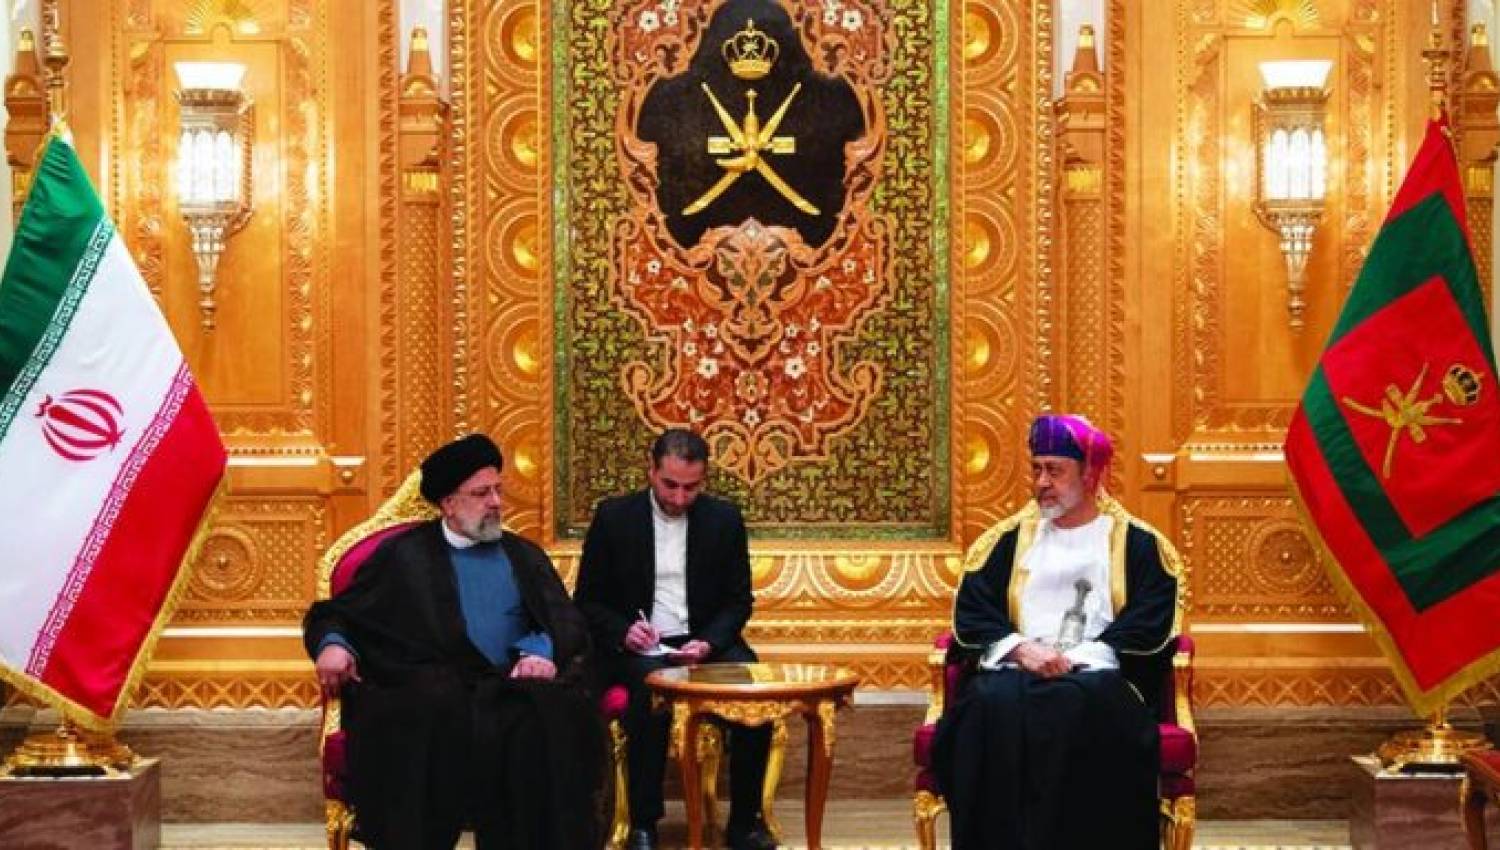 سلطان عمان في إيران: انفراجات كبيرة في الملفات الحساسة